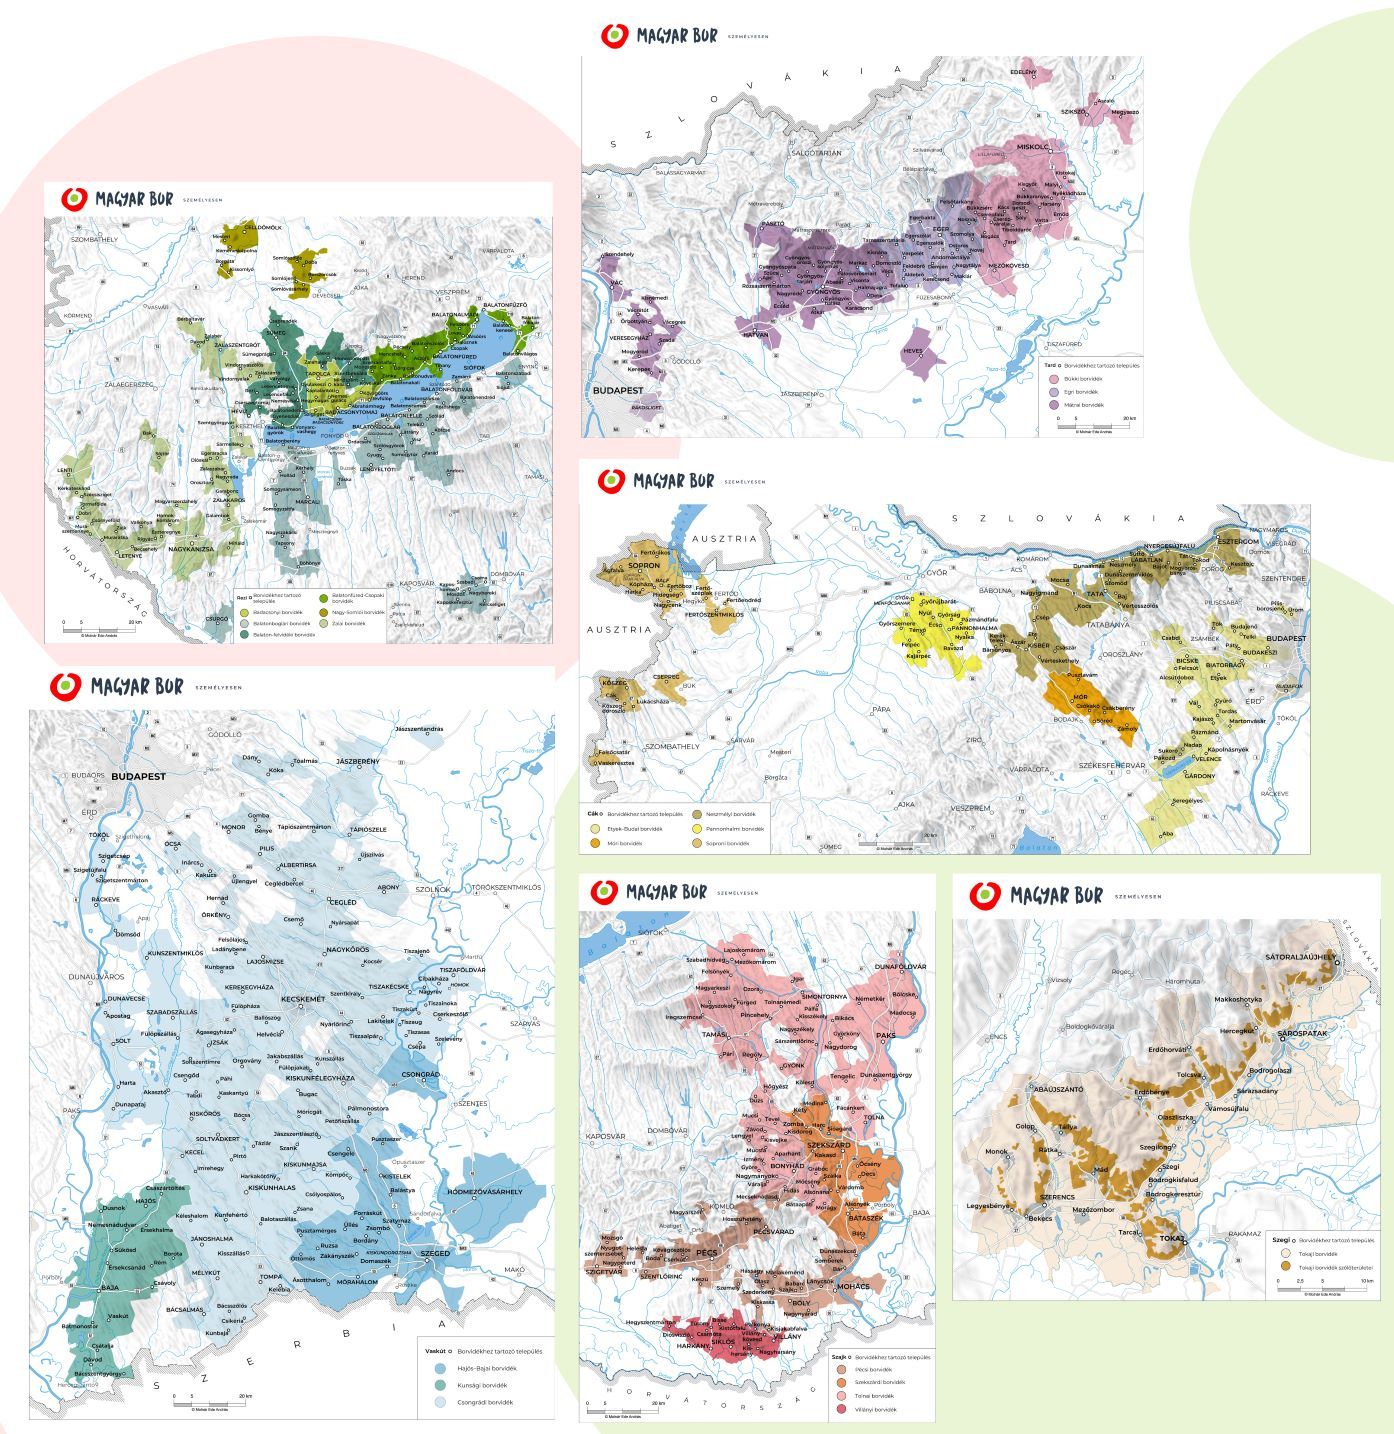 Magyarország bortermő régiói új térképeken